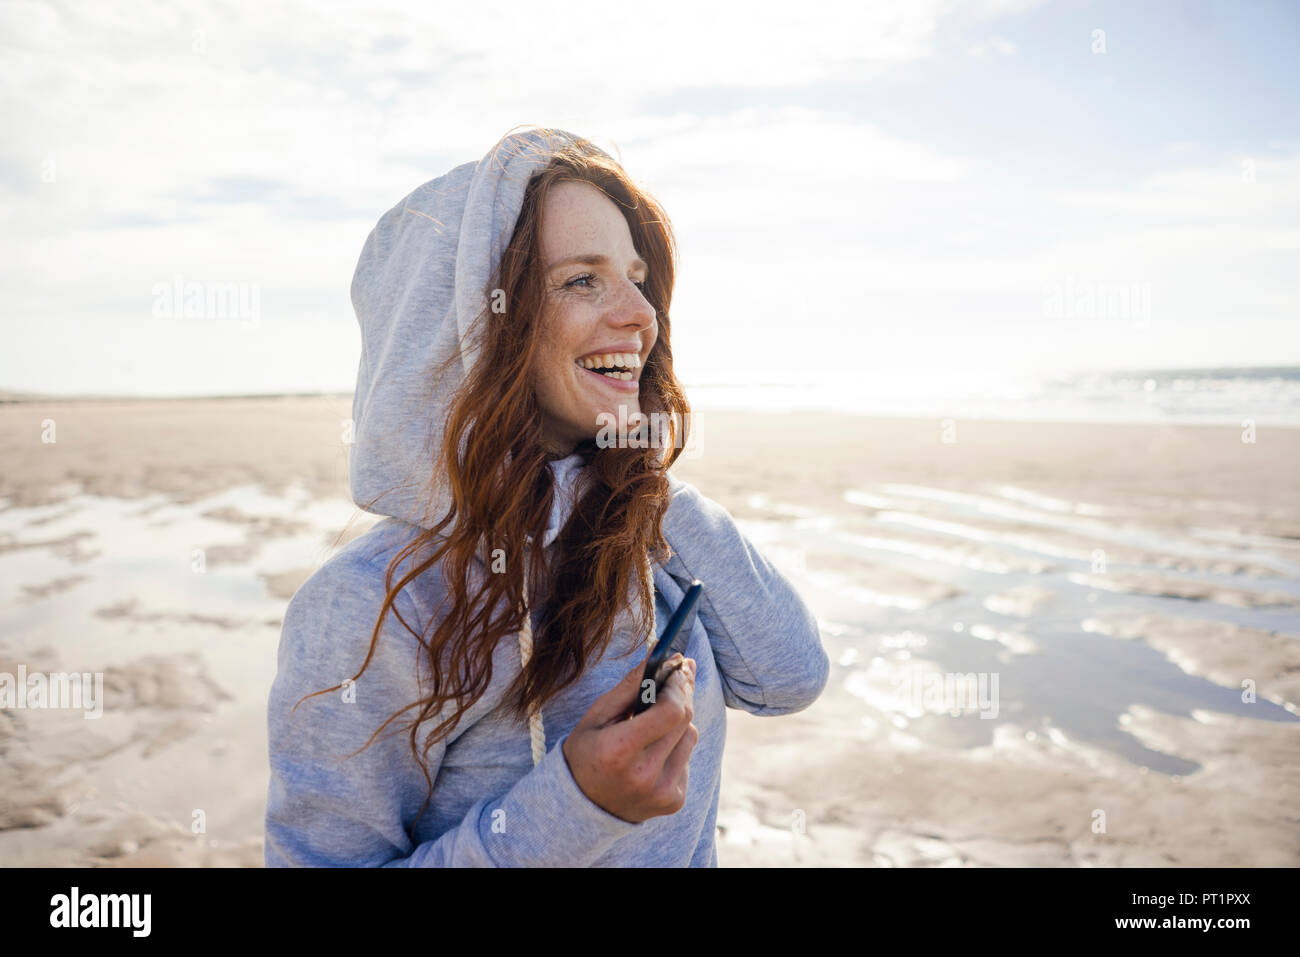 Woman having fun on a windy beach, wearing hood Stock Photo